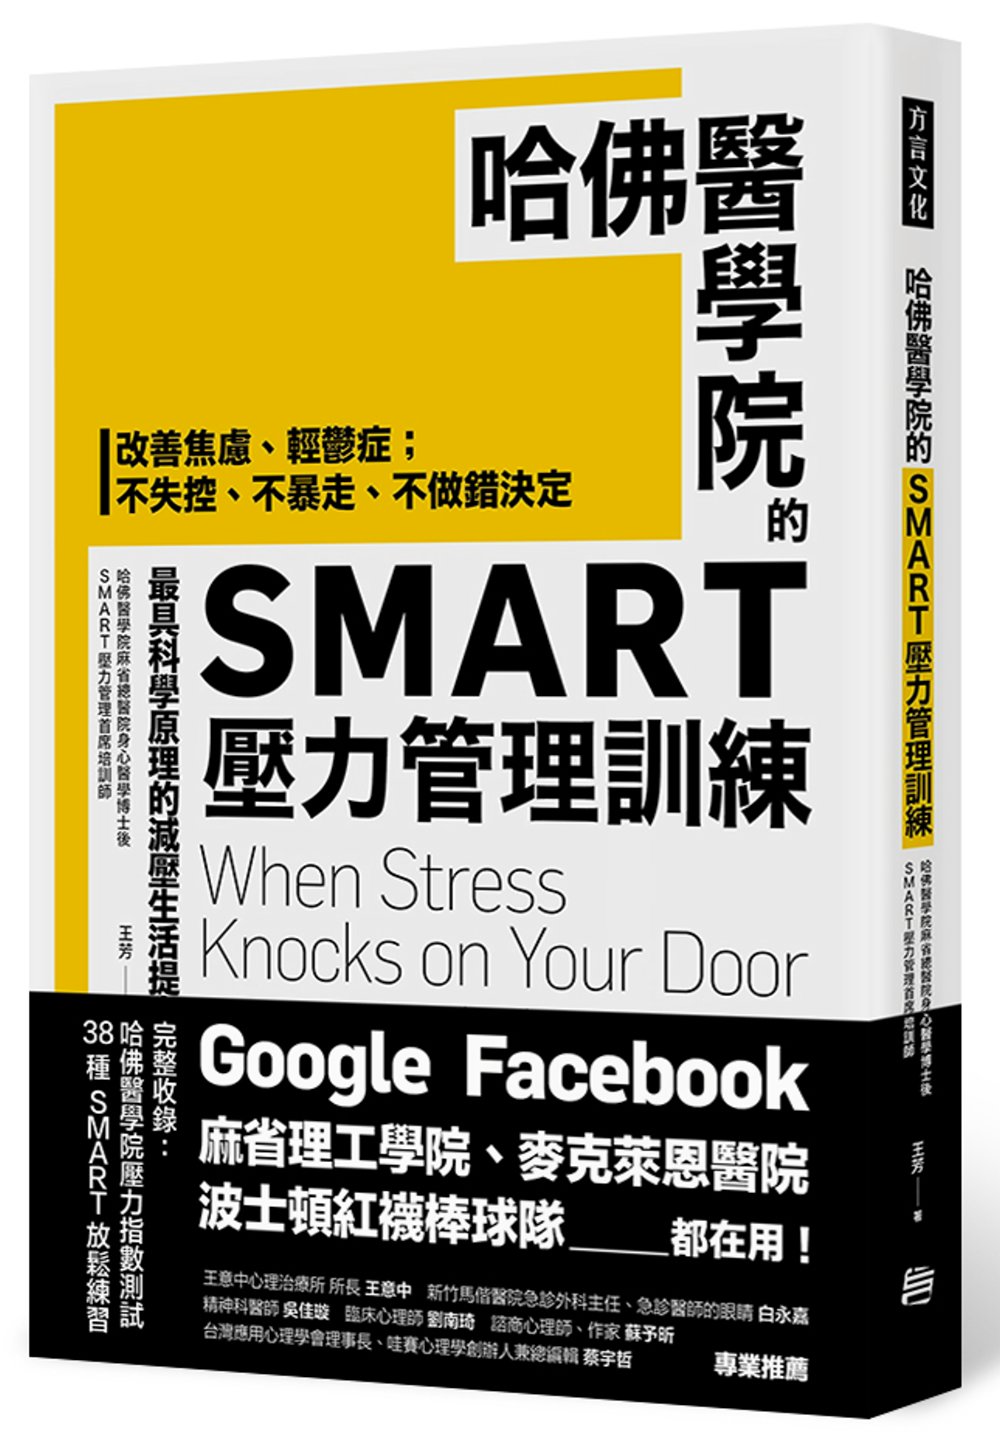 哈佛醫學院的SMART壓力管理訓練：改善焦慮、輕鬱症；不失控、不暴走、不做錯決定 最具科學原理的減壓生活提案